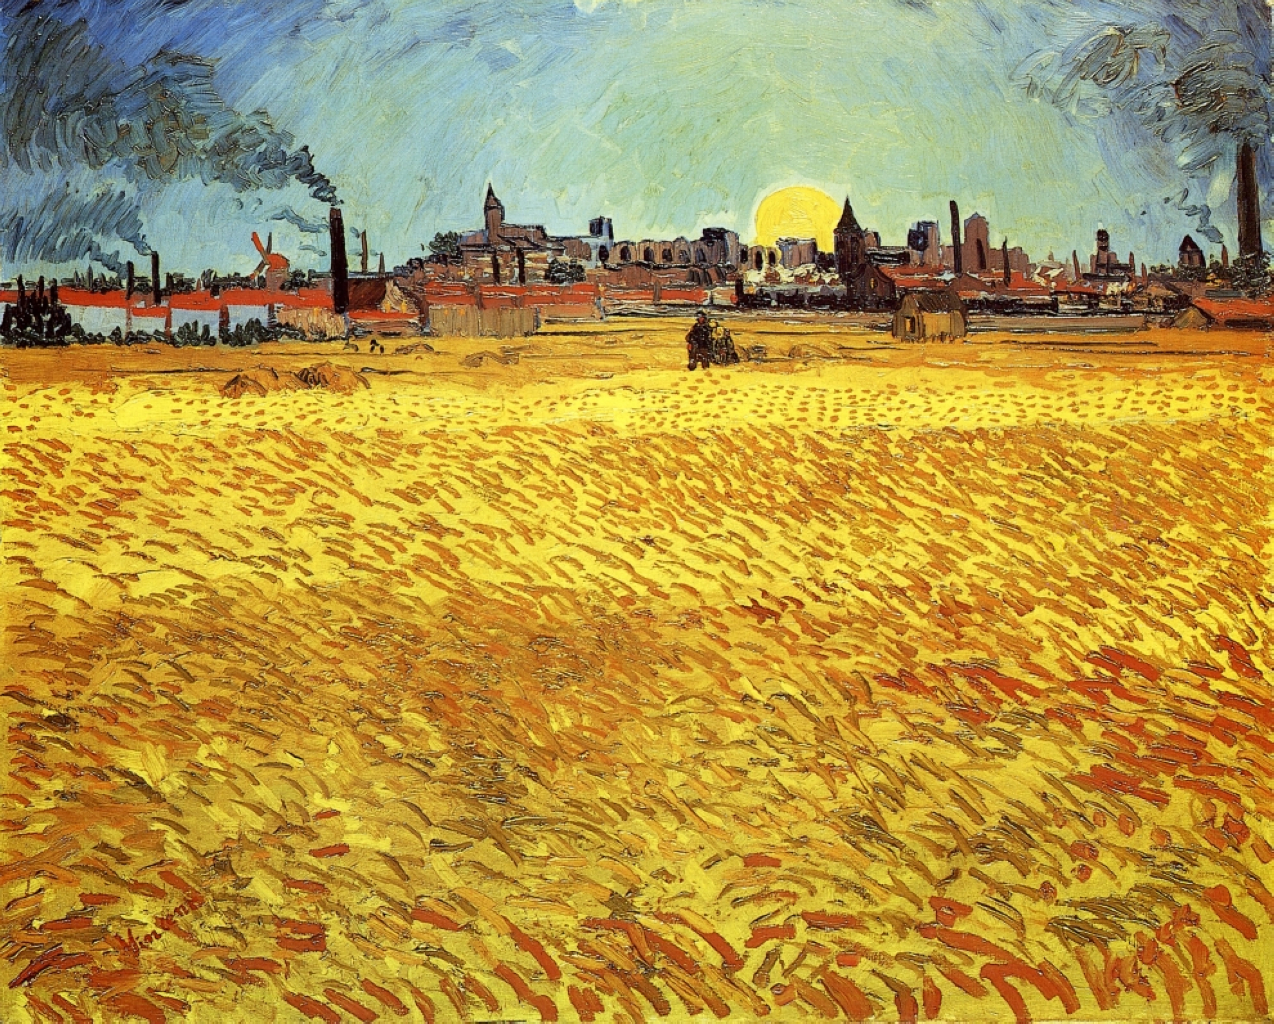 Yaz Akşamı, Batan Güneş ile Buğday Tarlası by Vincent van Gogh - 1888 - 188 x 231 cm 